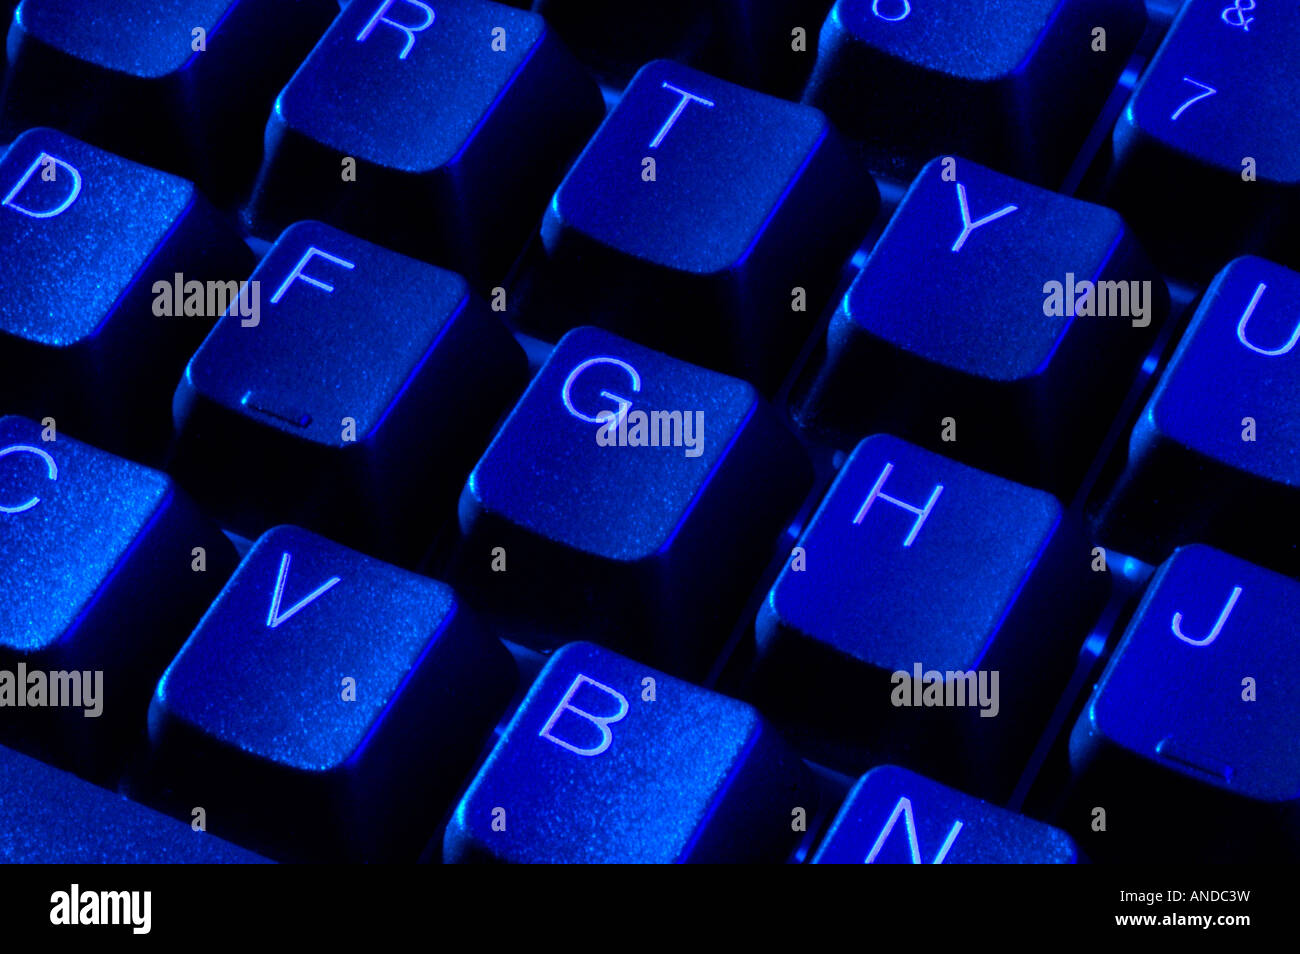 Clavier ordinateur bleu avec des touches qwerty alphanumérique Photo Stock  - Alamy